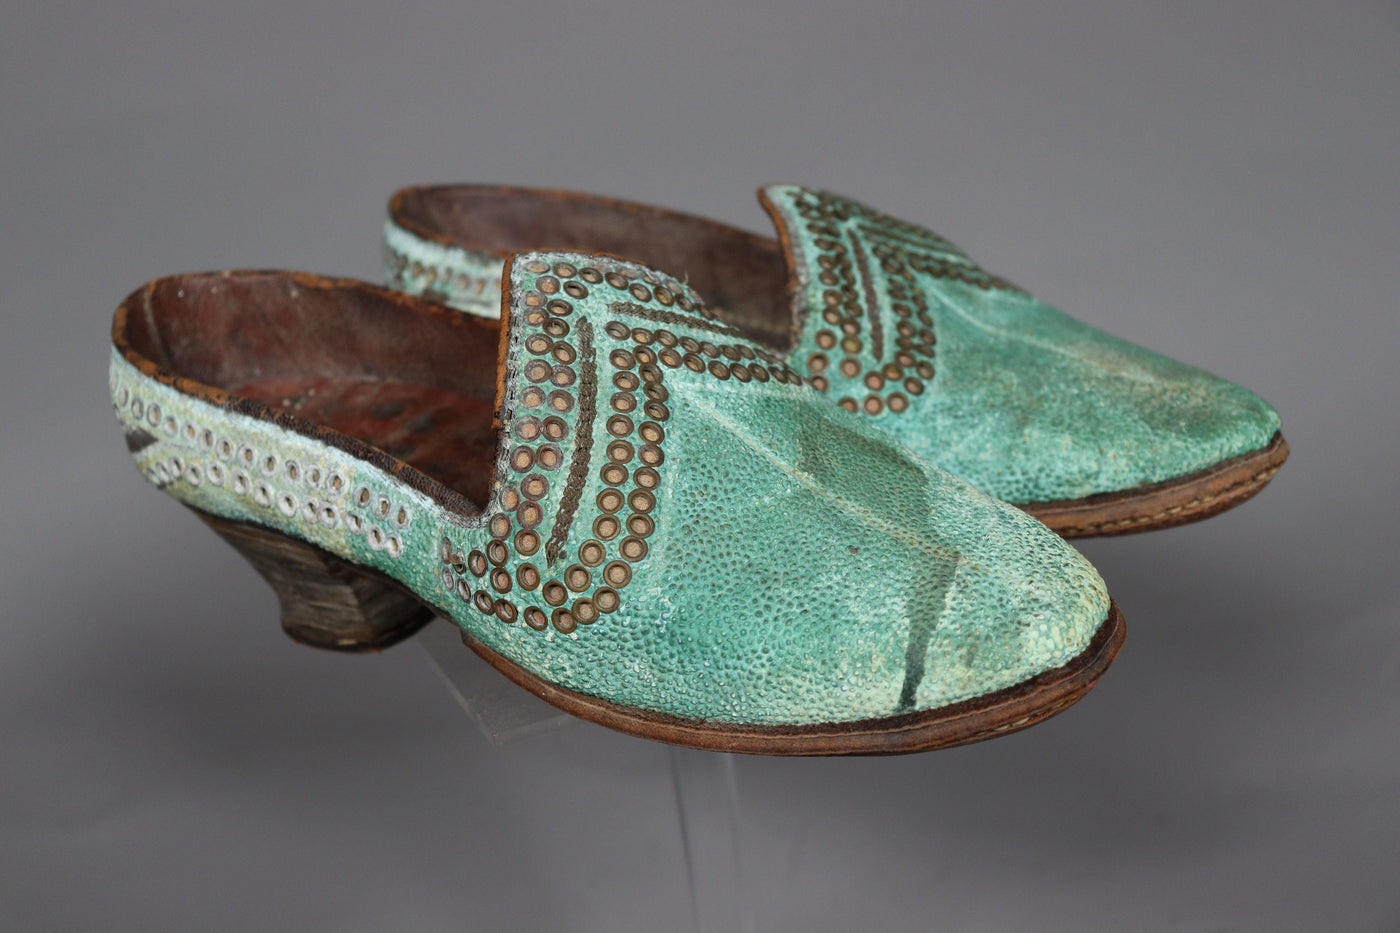 antik und sehr seltener nomaden Usbekische Frauen Hochzeit Schuhe aus Afghanistan  Orientsbazar   